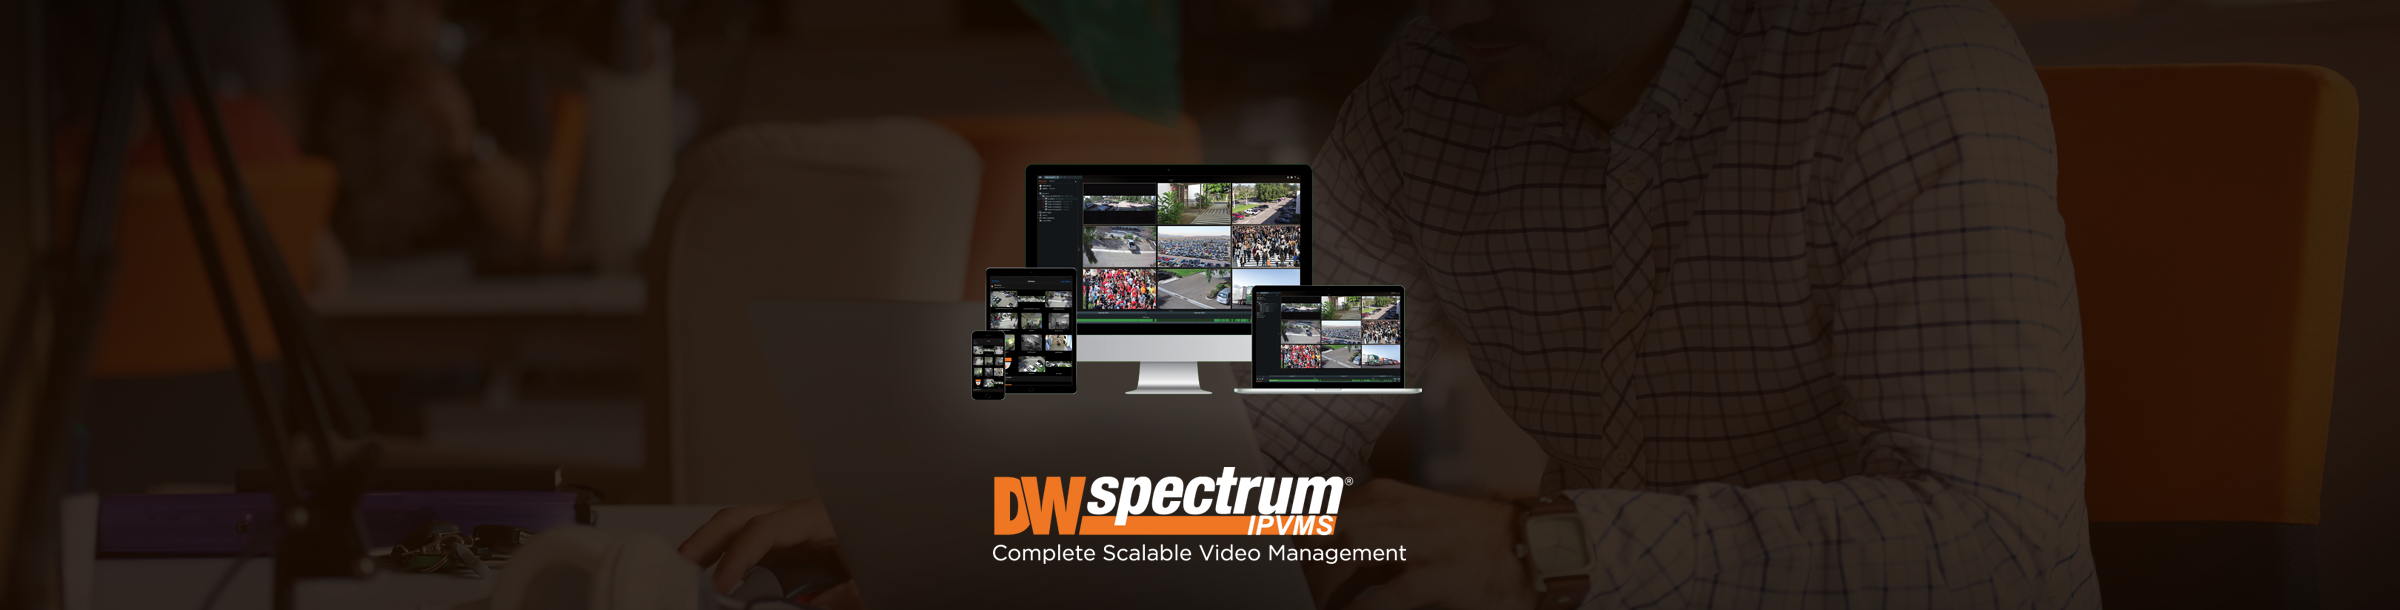 dw spectrum download video